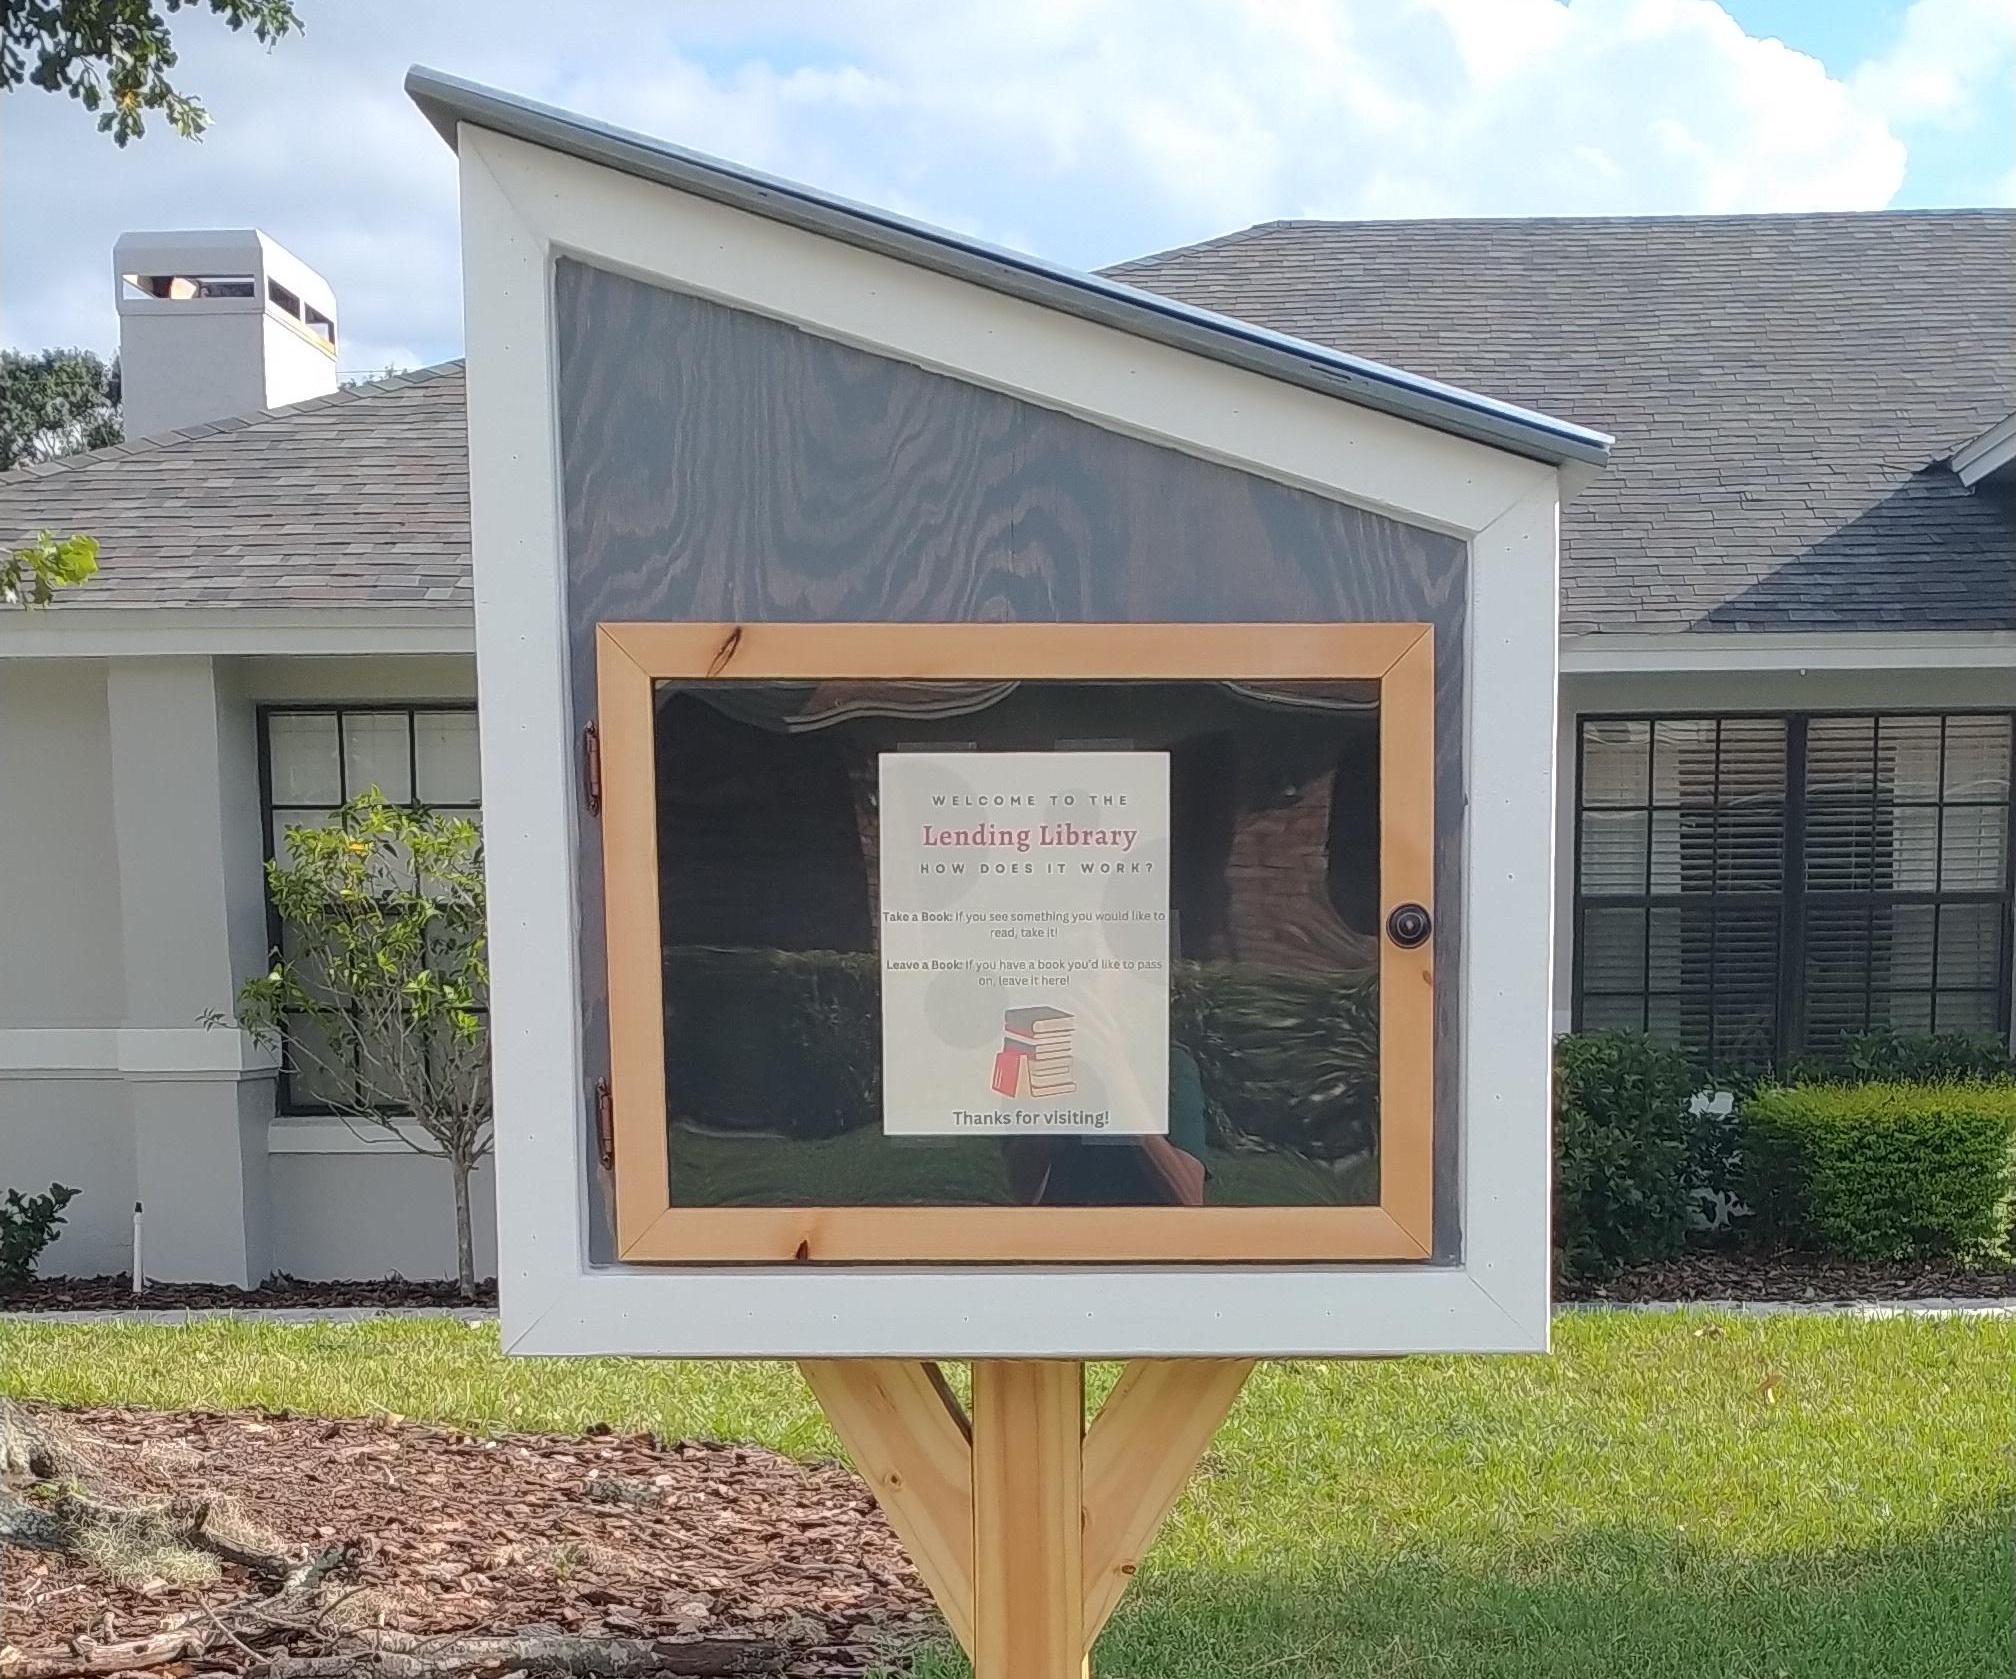 Neighborhood Lending Library / Birdhouse